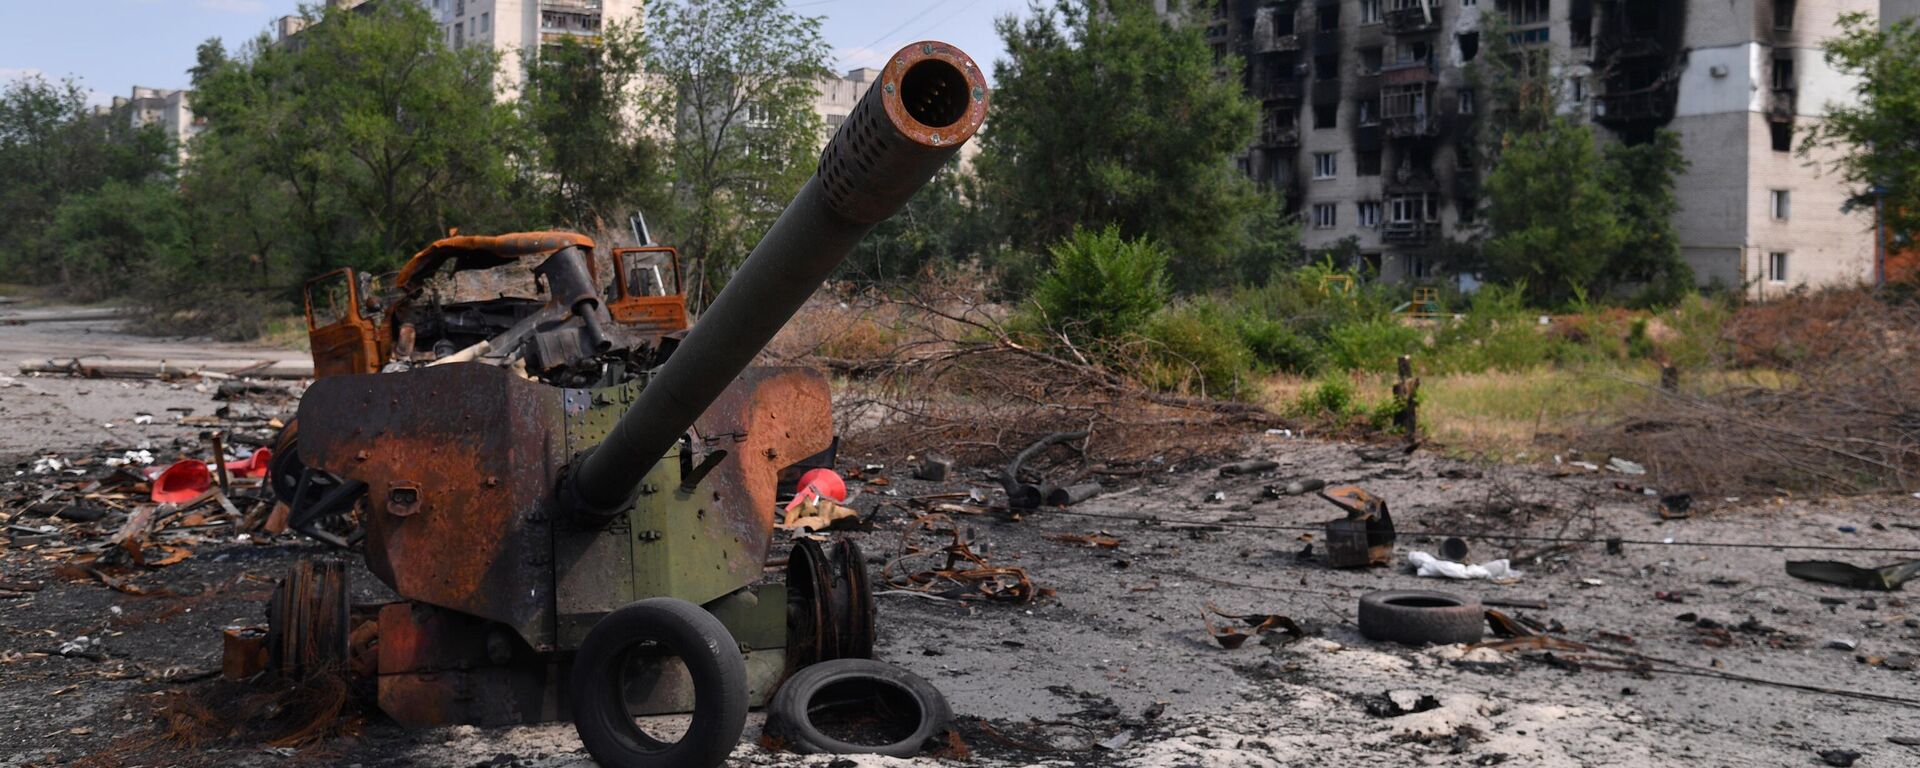 Arma de artilharia das Forças Armadas da Ucrânia destruída em Severodonetsk, no leste ucraniano, 11 de junho de 2022 - Sputnik Brasil, 1920, 17.10.2022